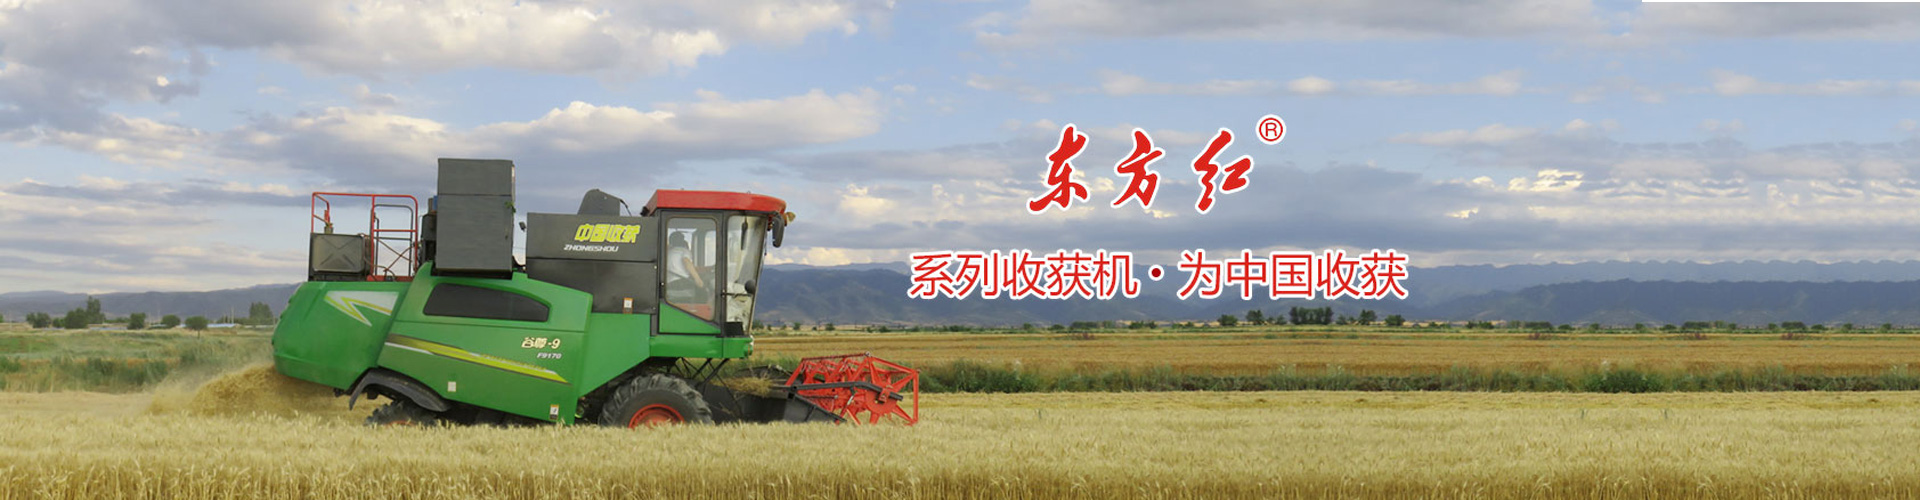 安徽春生农业科技有限公司-banner10